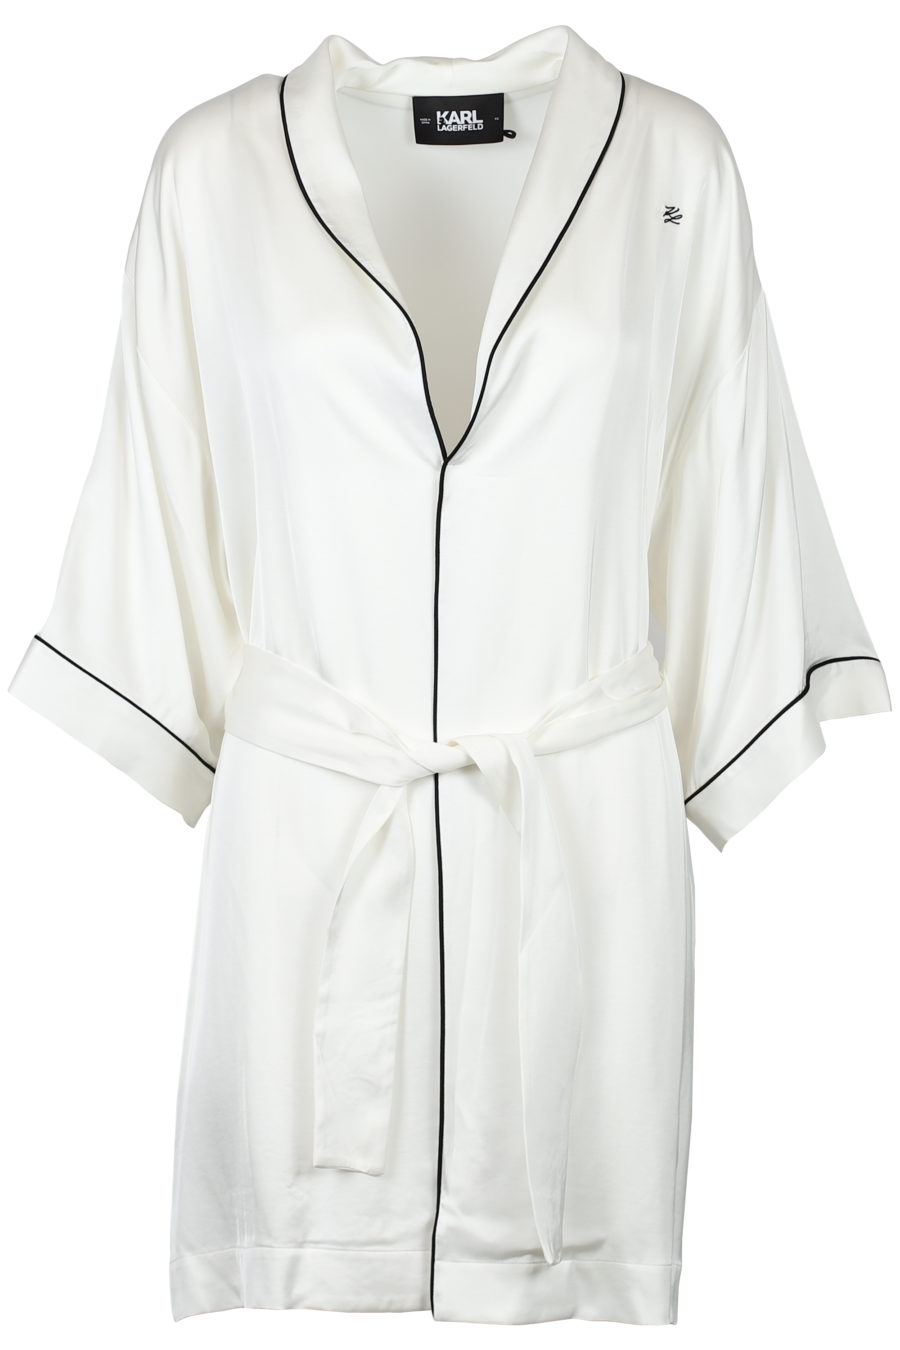 Kimono en satin blanc cassé - IMG 2118